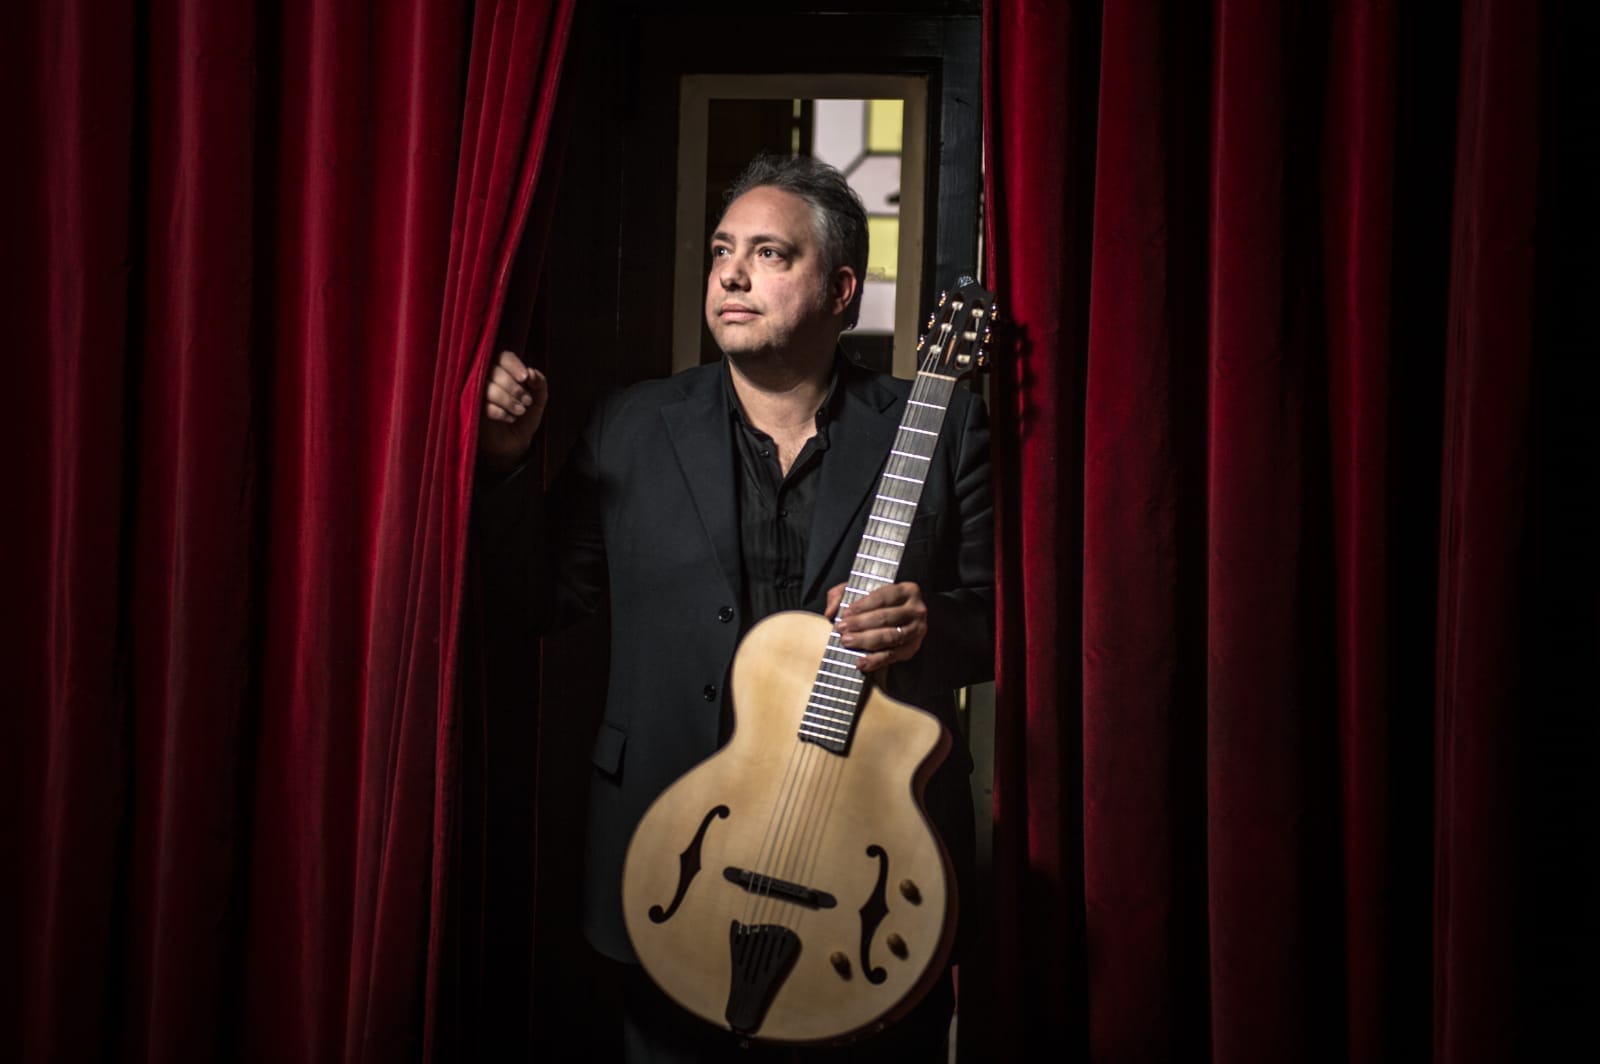 Caltanissetta. Al Teatro Margherita il chitarrista Francesco Buzzurro presenta il suo live “Un’Orchestra a 6 corde”